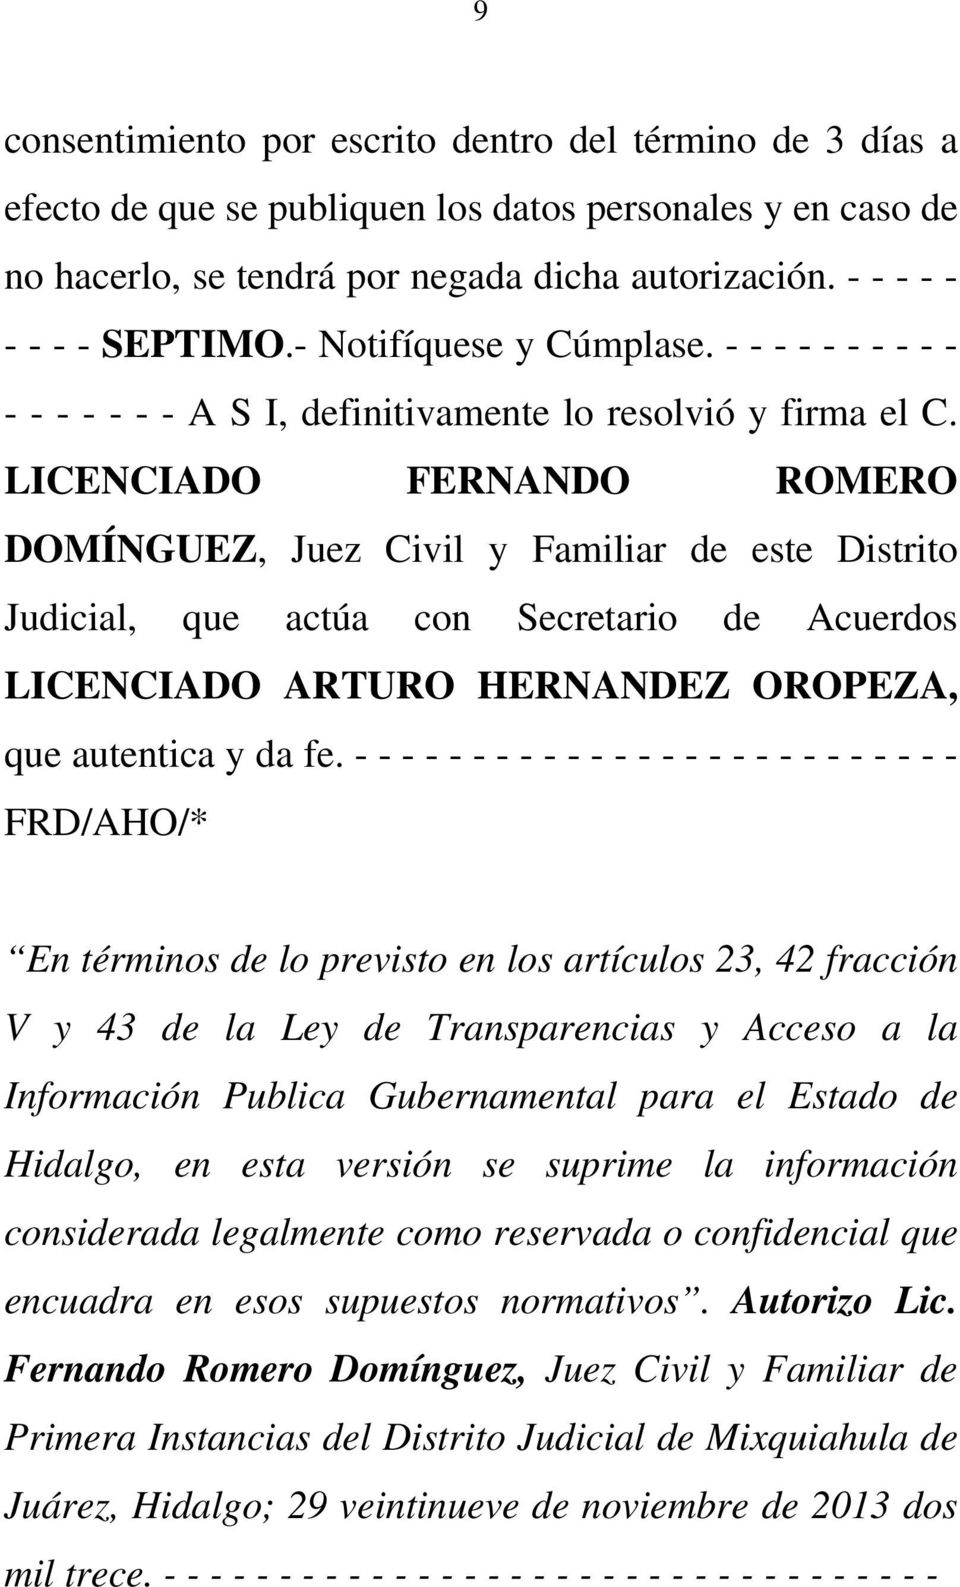 LICENCIADO FERNANDO ROMERO DOMÍNGUEZ, Juez Civil y Familiar de este Distrito Judicial, que actúa con Secretario de Acuerdos LICENCIADO ARTURO HERNANDEZ OROPEZA, que autentica y da fe.